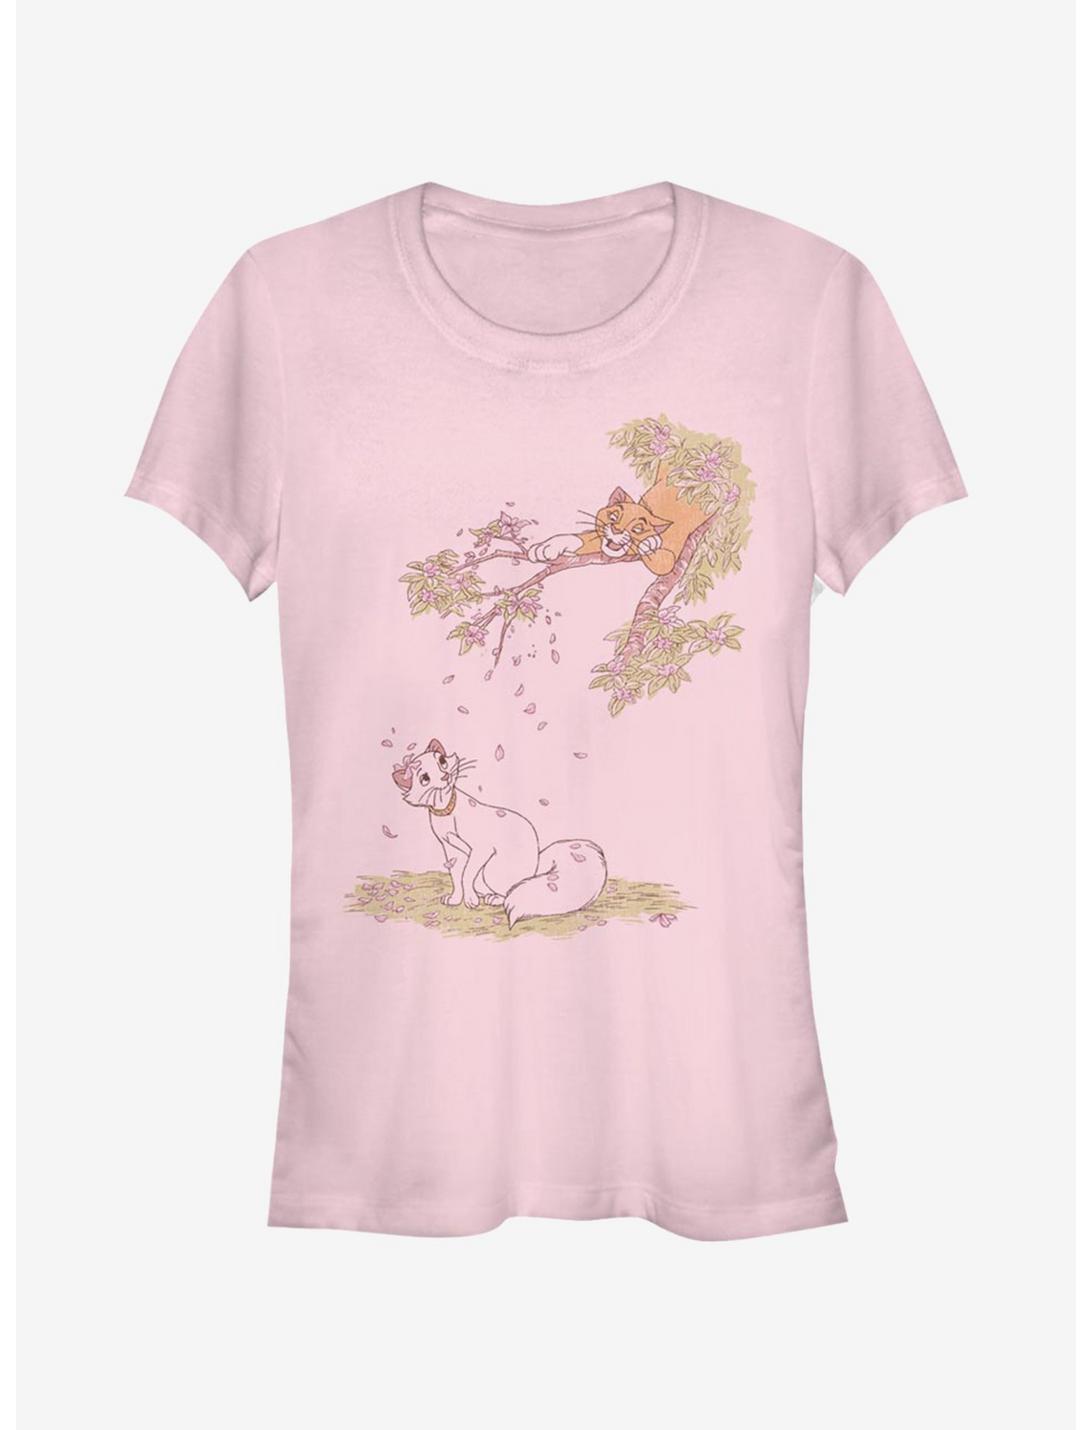 Disney The Aristocats Raining Petals Girls T-Shirt, LIGHT PINK, hi-res